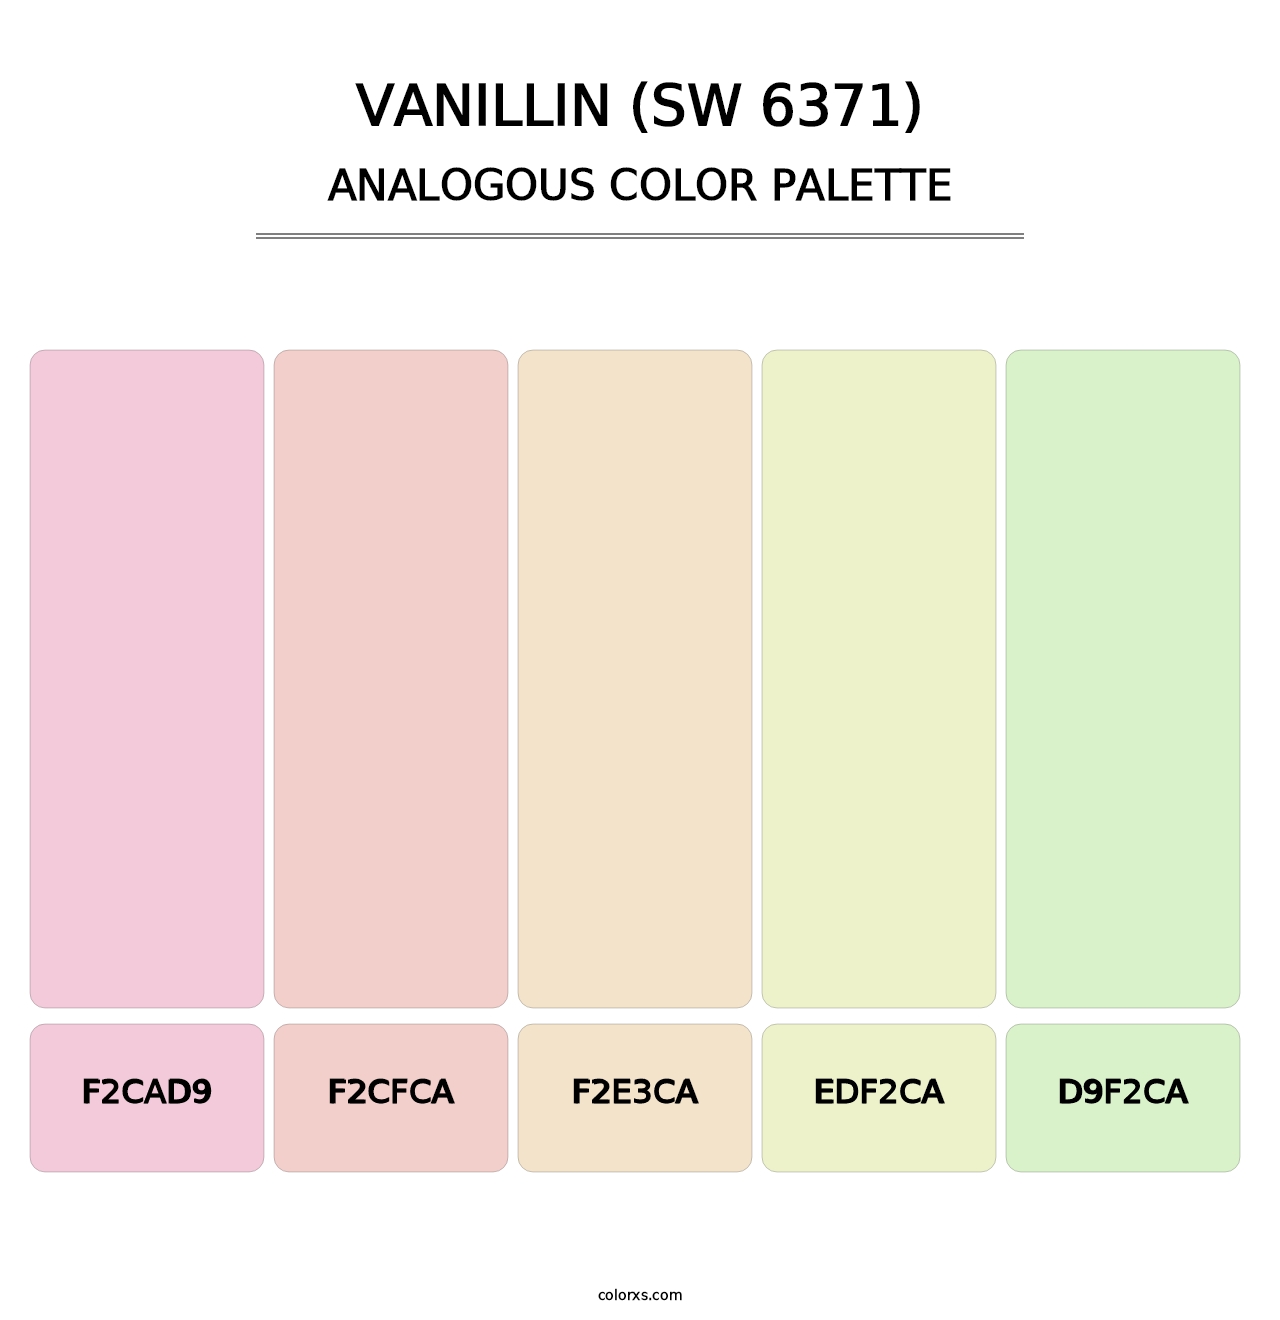 Vanillin (SW 6371) - Analogous Color Palette